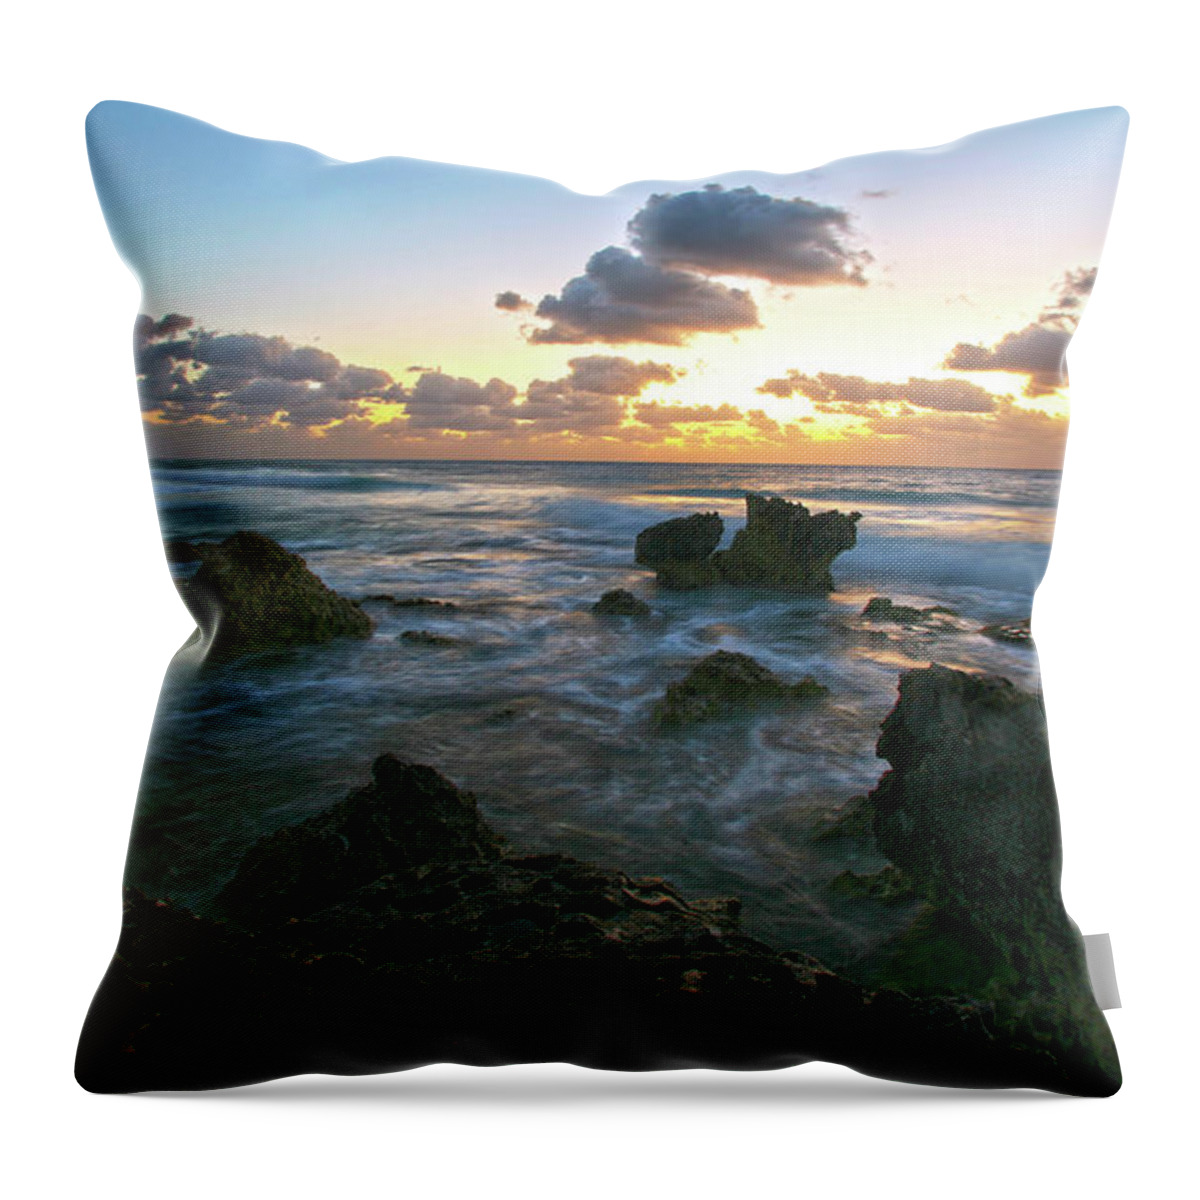 Spanish Throw Pillow featuring the photograph Sunset Seas by Robert Och